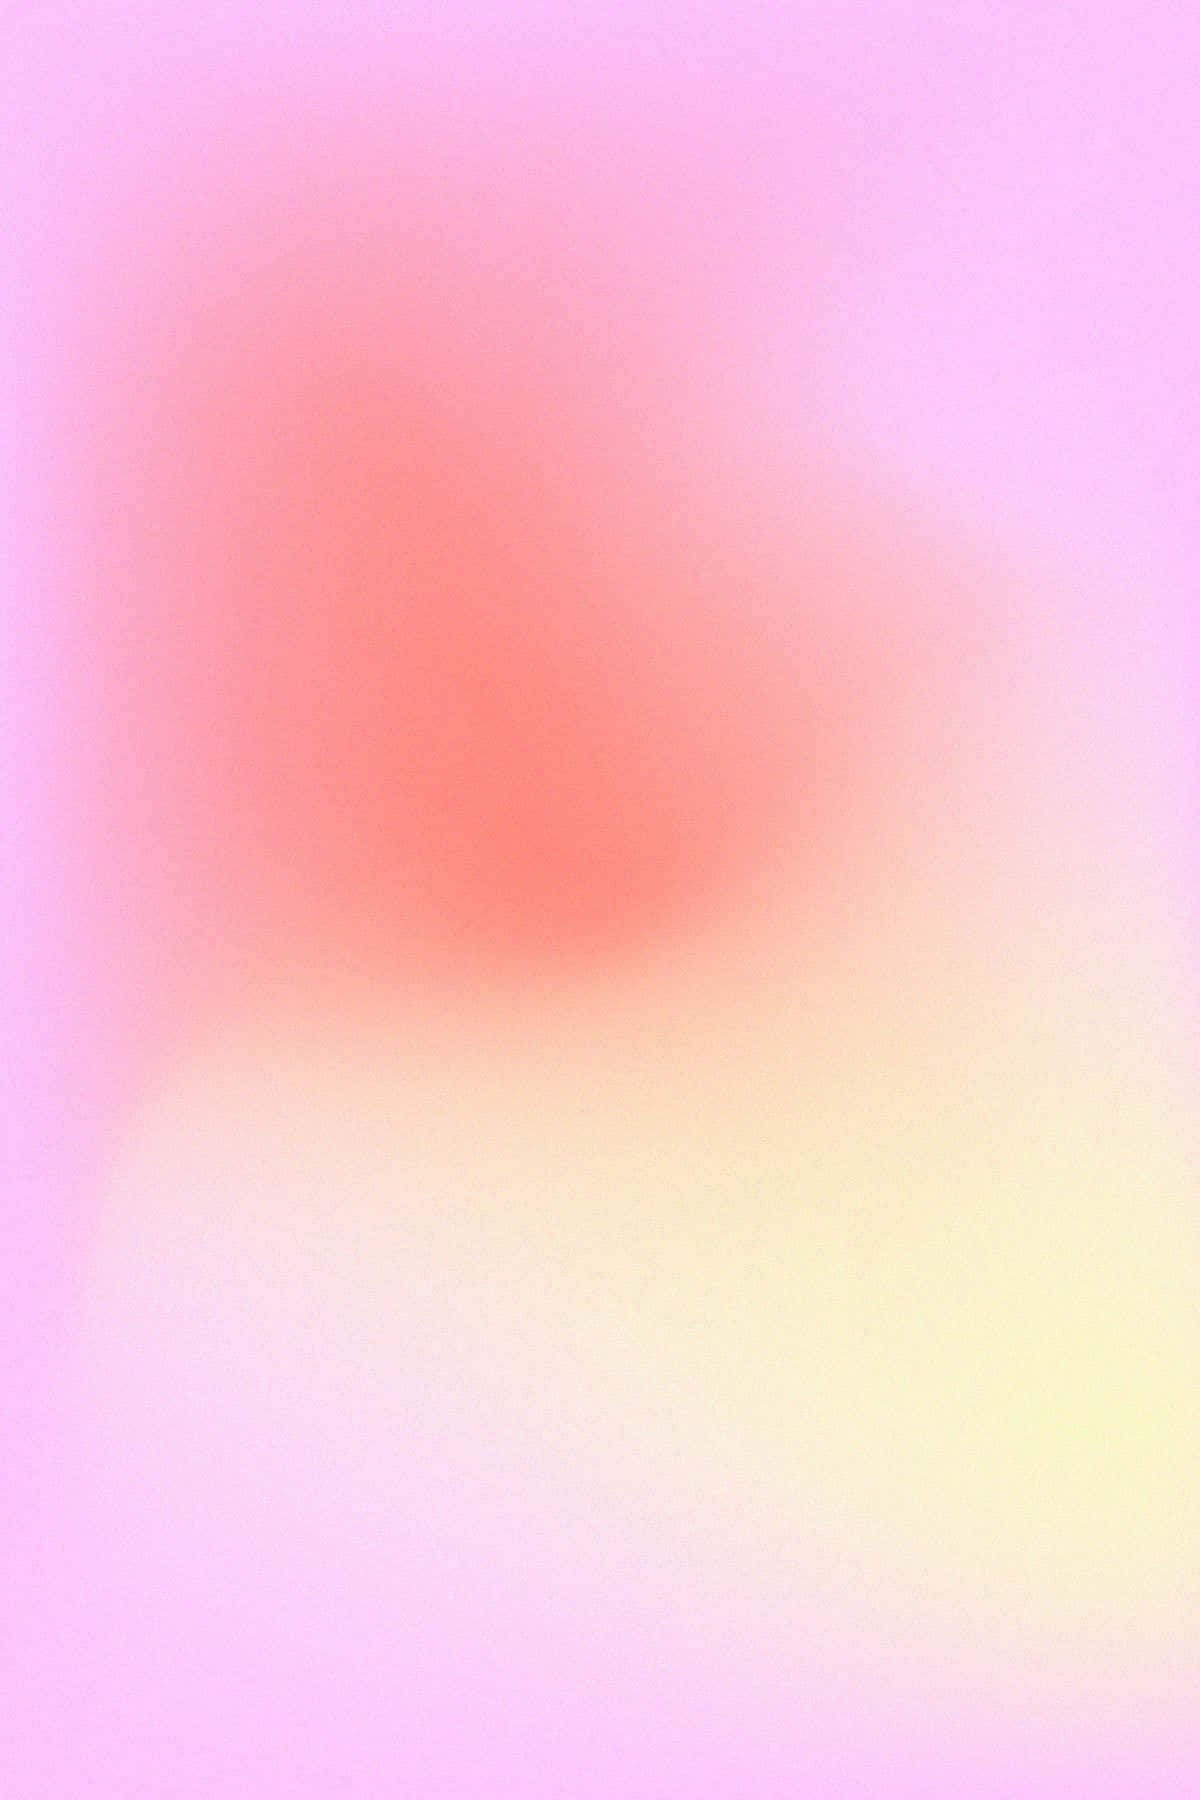 Pink Gradient Background 1200 X 1800